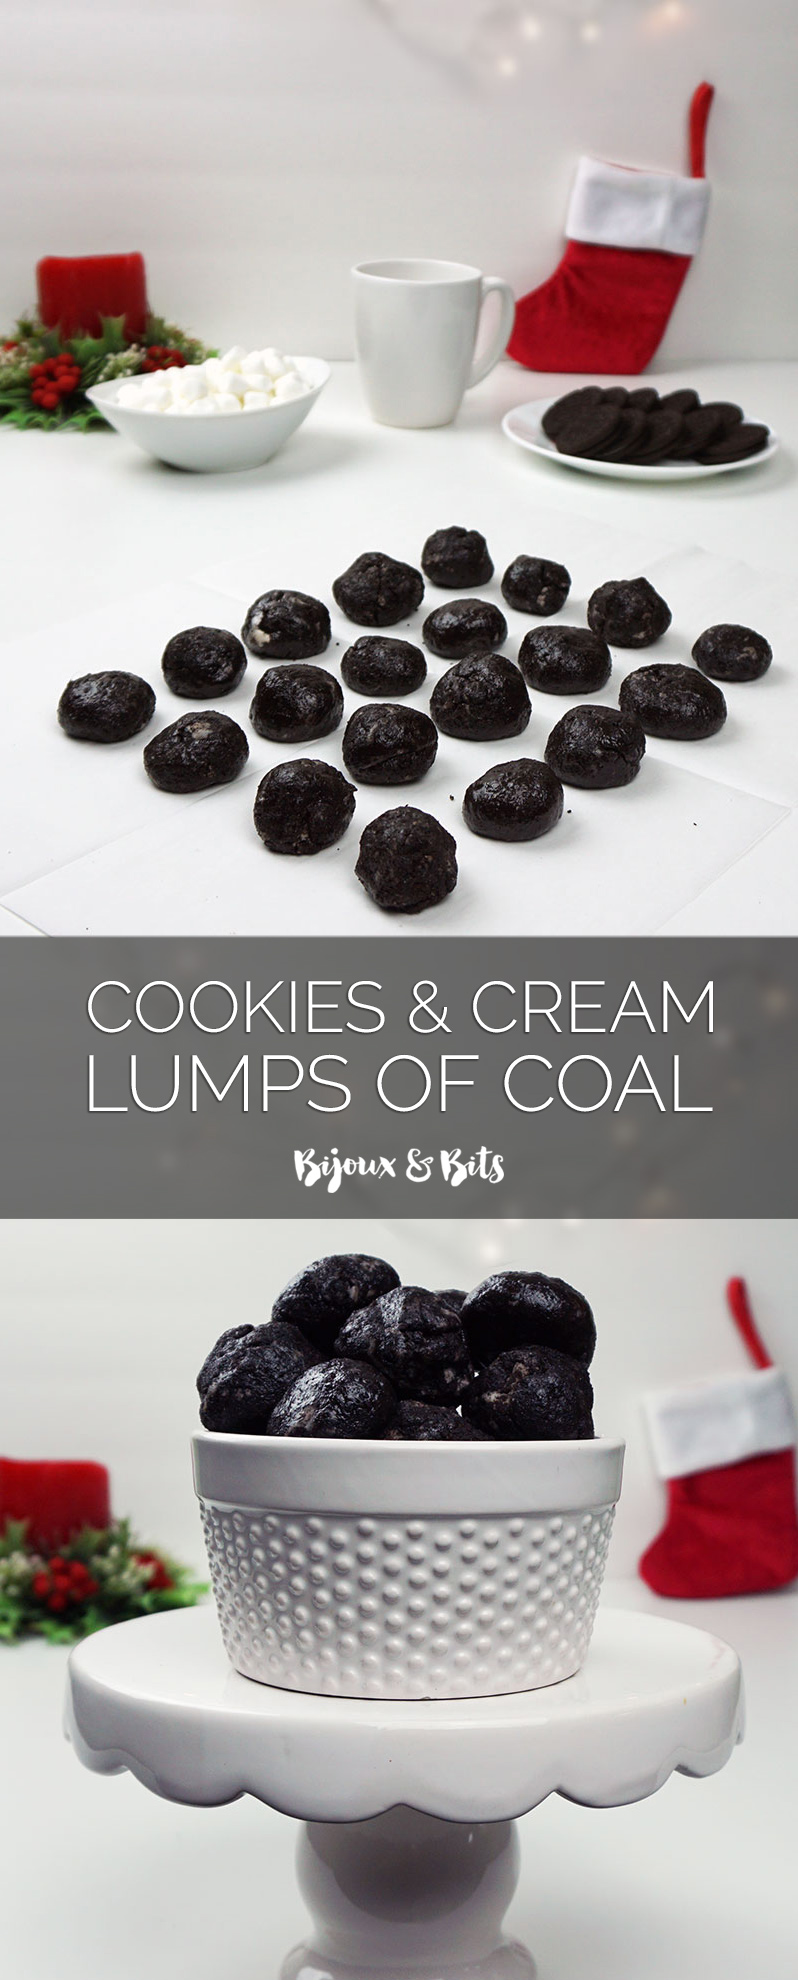 Cookies & cream "lumps of coal" from @bijouxandbits